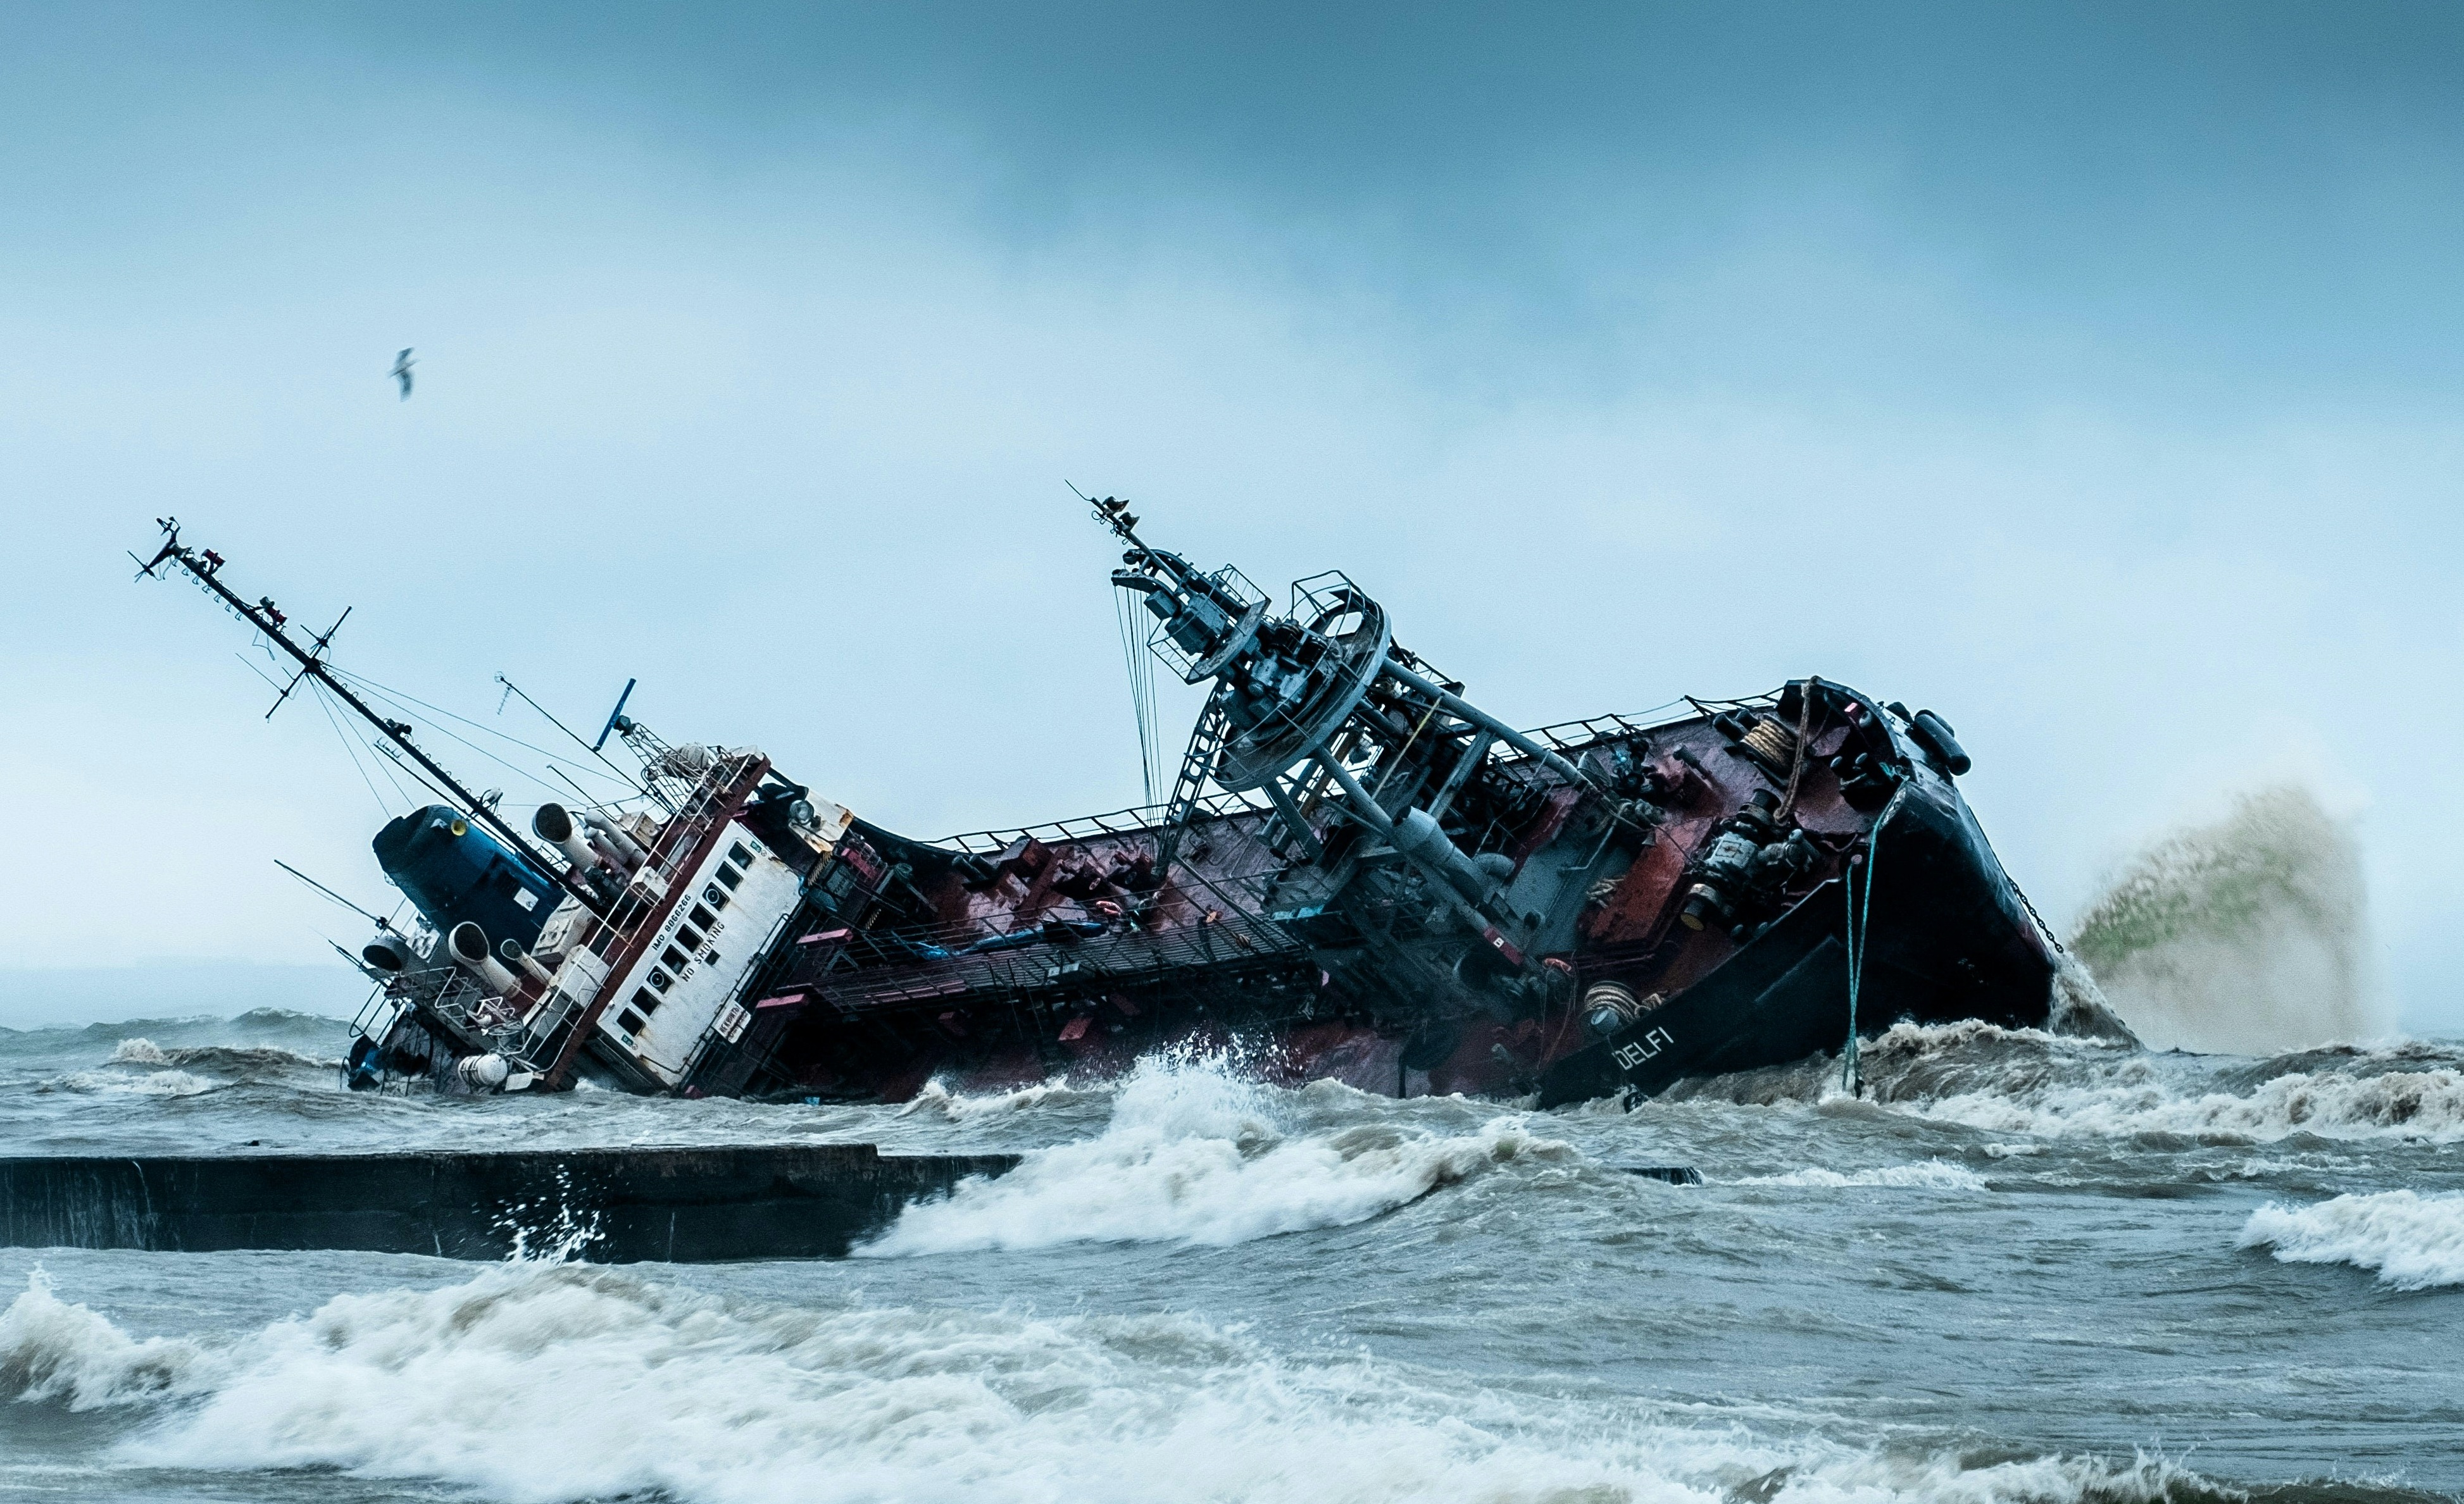 Le naufrage d'un navire non identifié ravage l'archipel de Trinité-et-Tobago. © Yevhen Buzuk, Unsplash